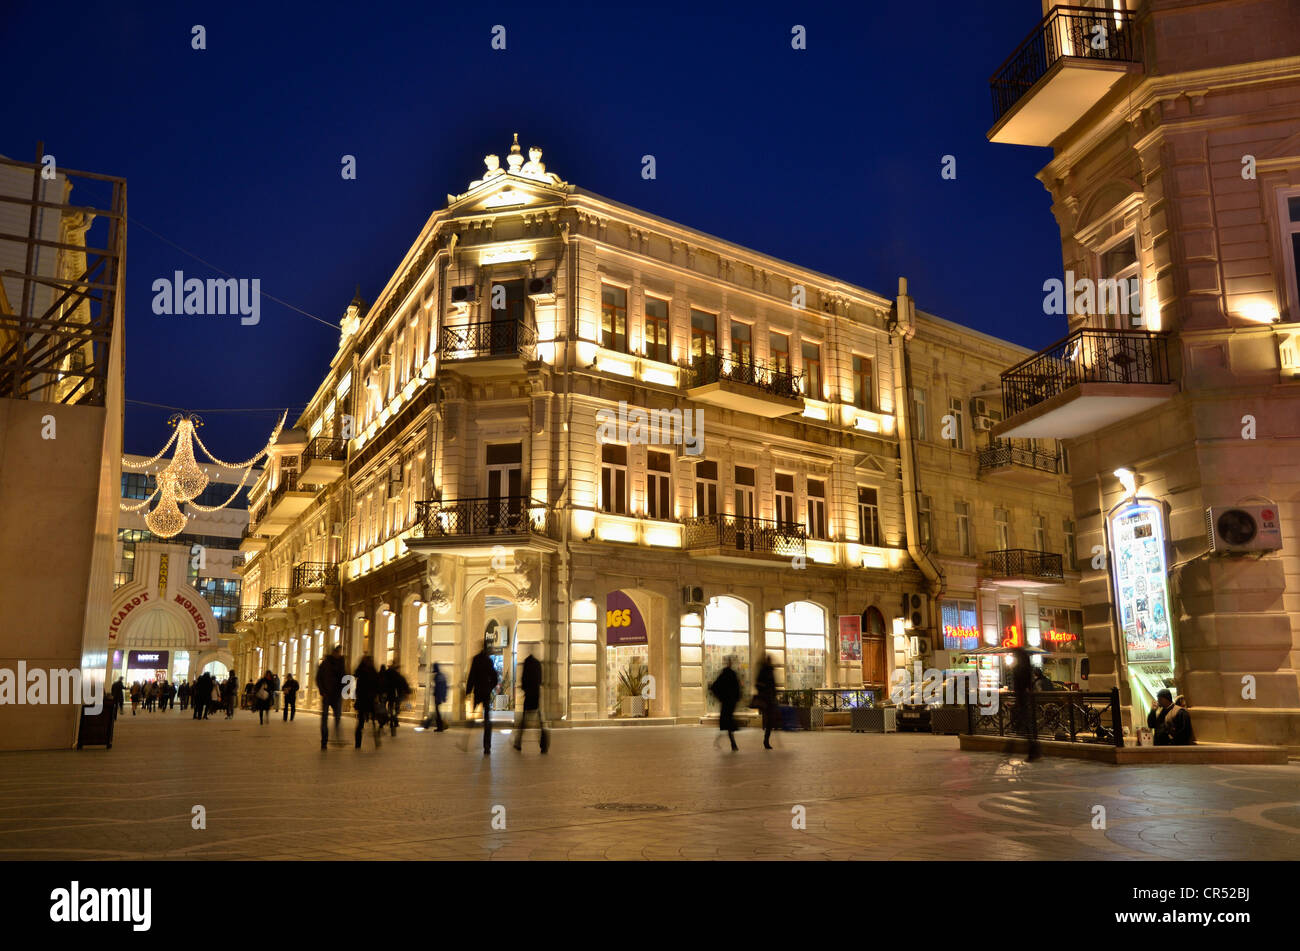 Fußgänger auf der beleuchteten Fountain Square, historische Stadtzentrum von Baku, Aserbaidschan, UNESCO-Weltkulturerbe, Caucasus Stockfoto